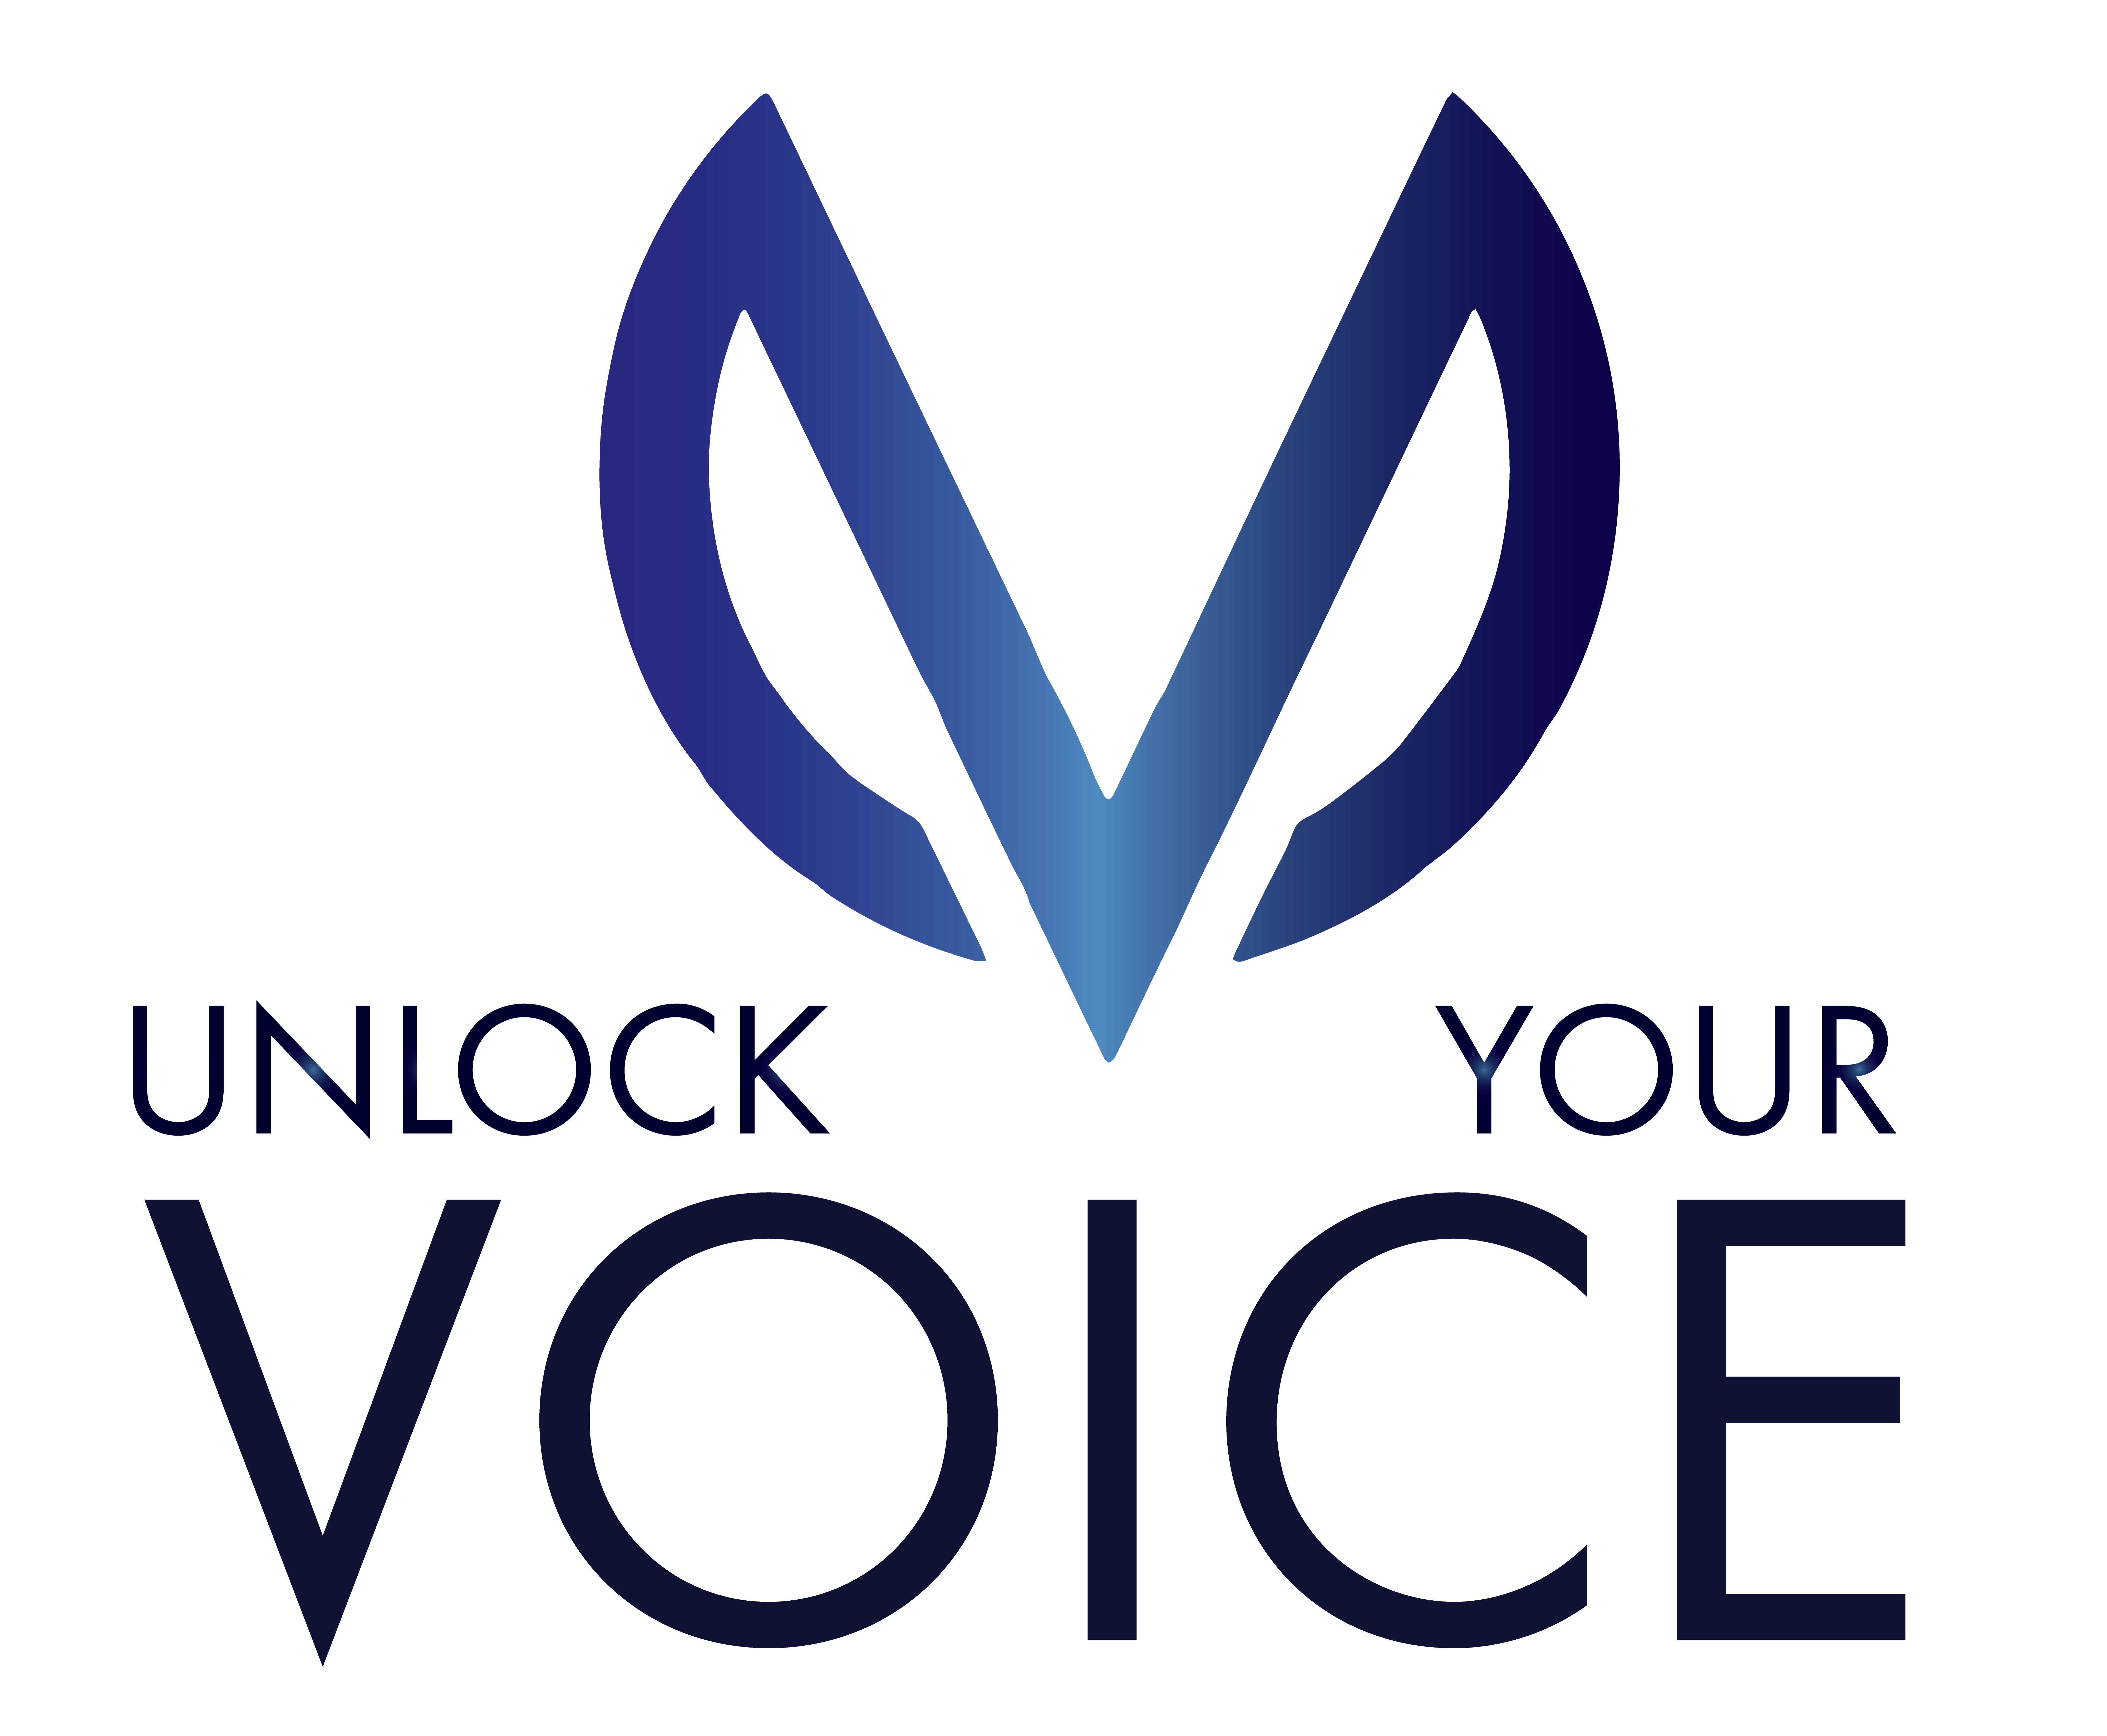 UNLOCK YOUR VOICE